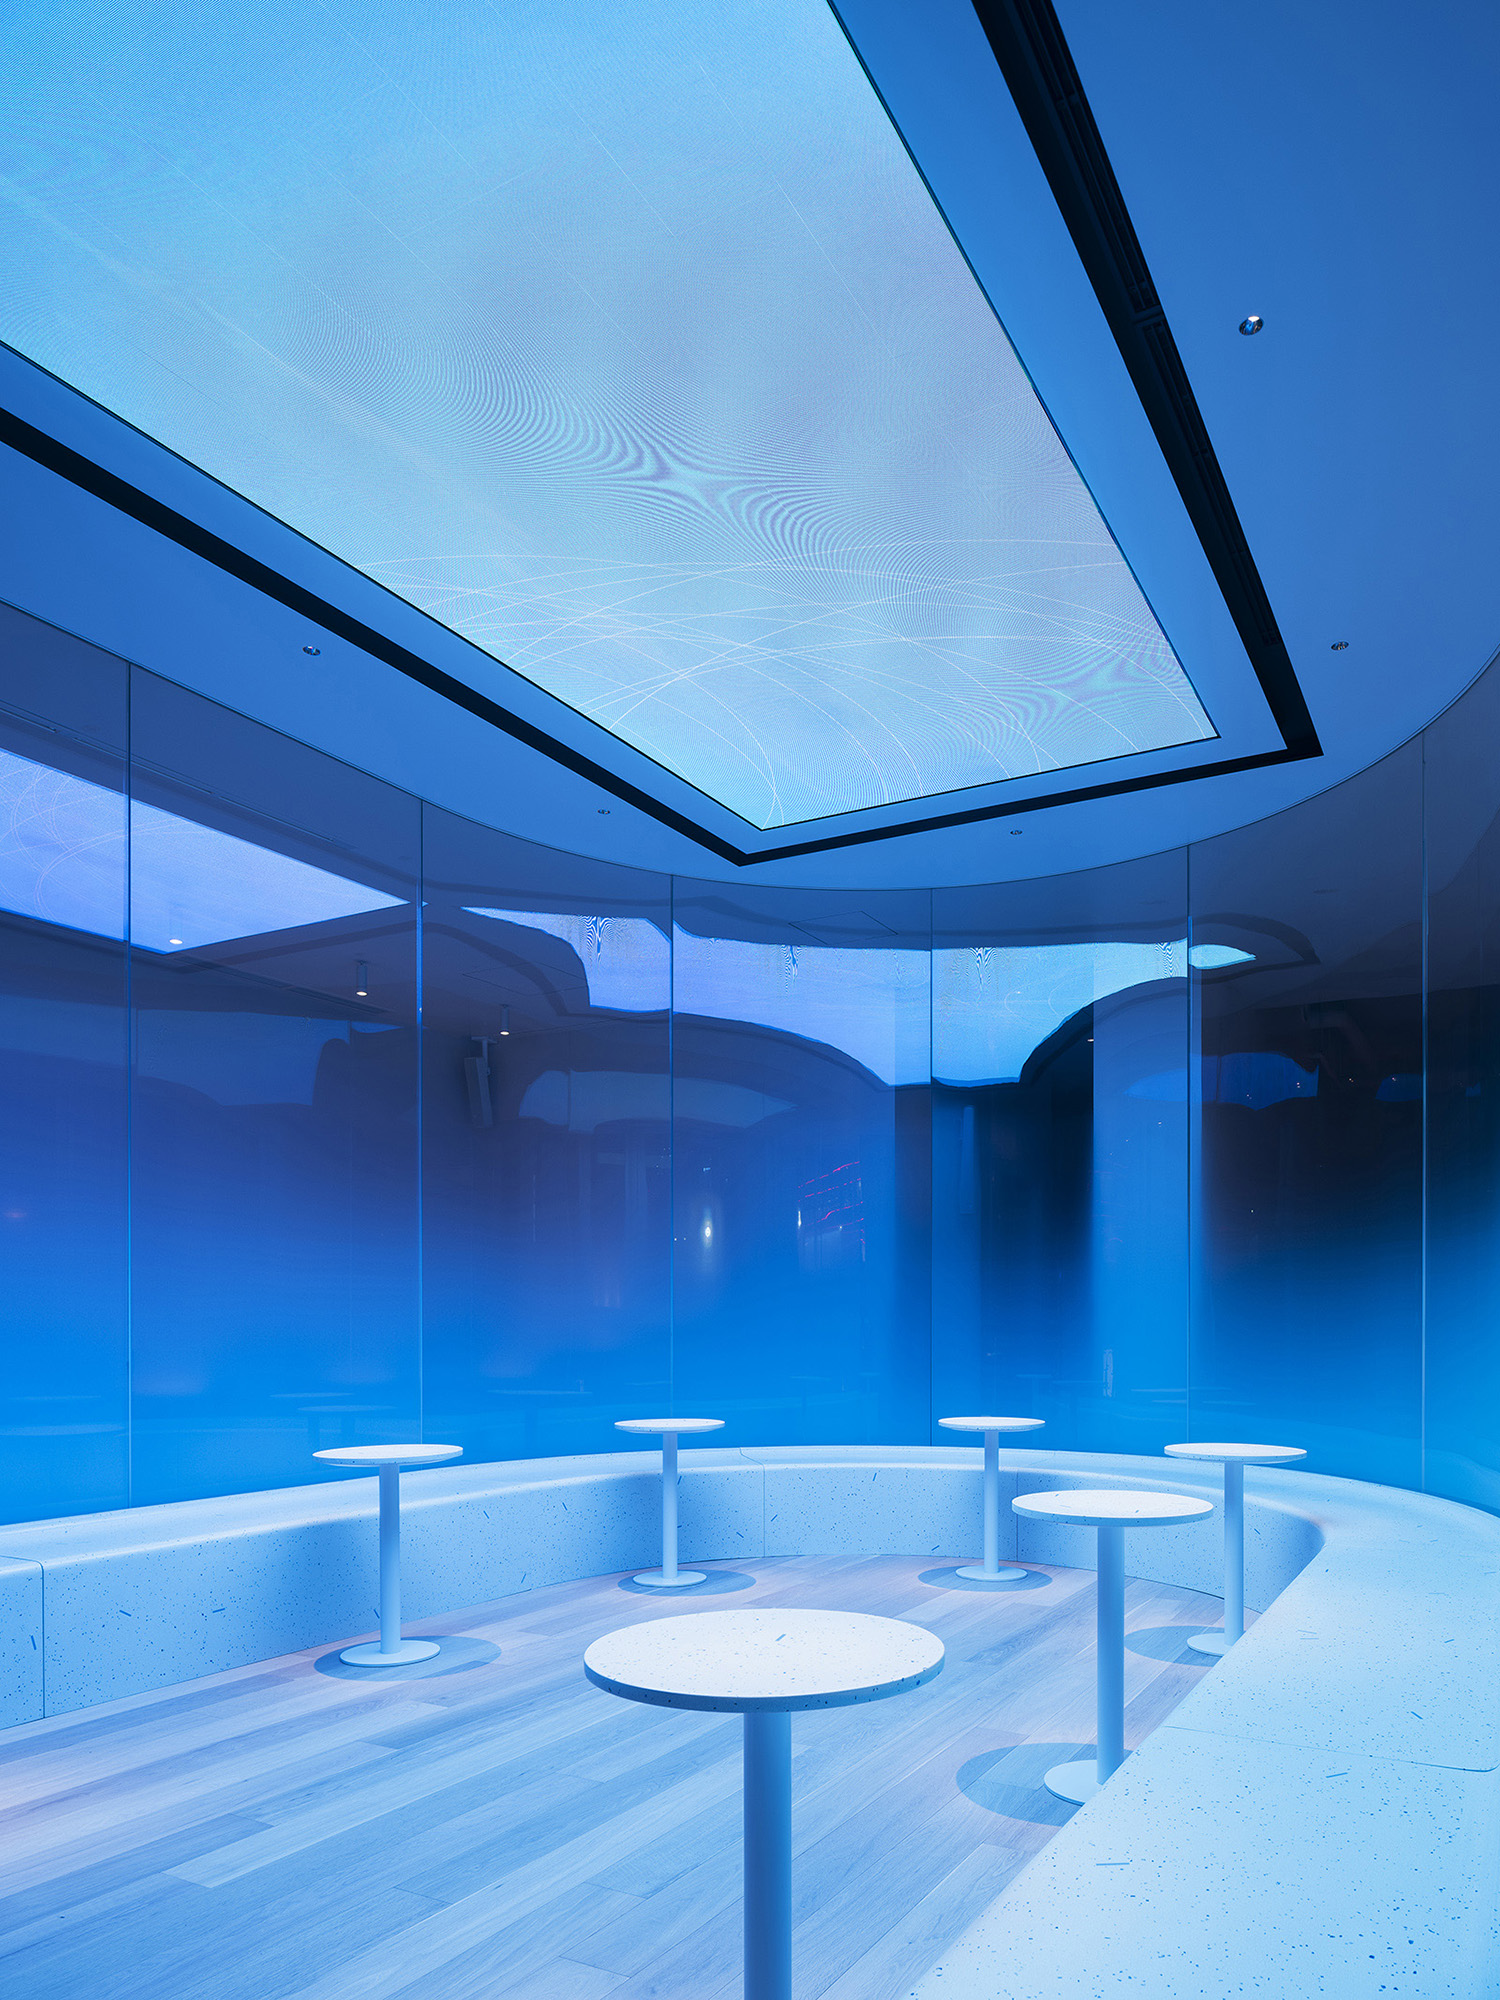 蓝色树脂台面、柜内线型灯、玻璃球组合吊灯、,水泥漆外立面、蓝紫色静谧空间、金属操作台磨砂玻璃、,日本灯光设计|大阪极简主义蓝瓶咖啡厅照明设计案例